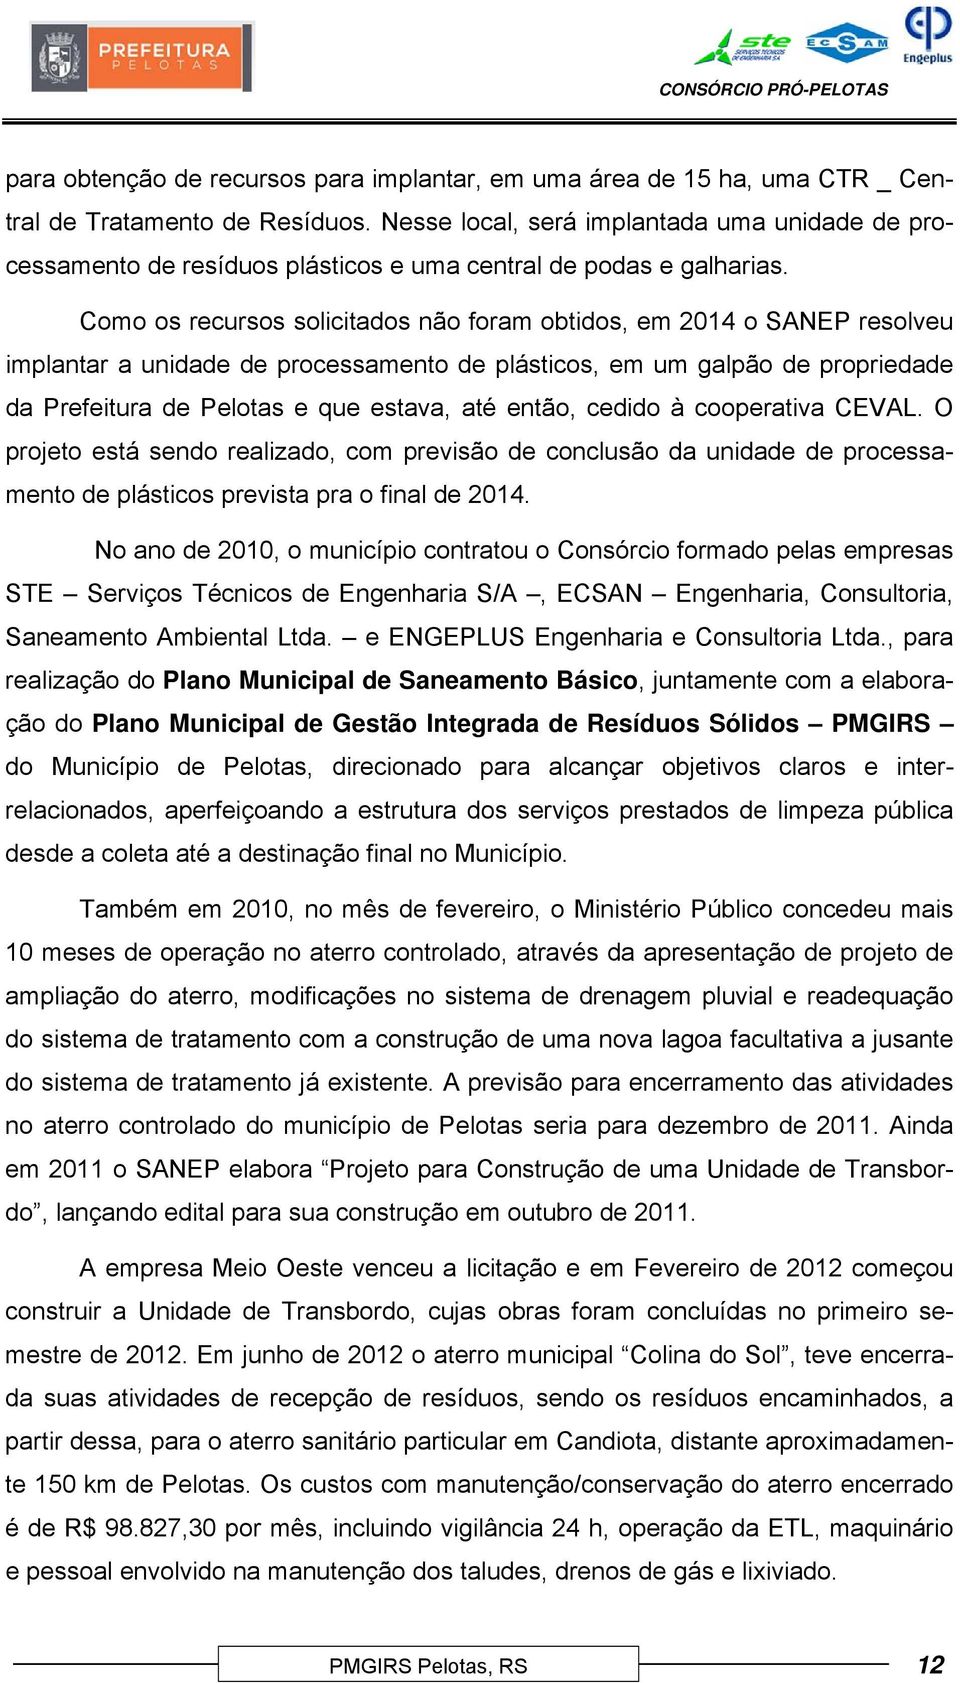 Como os recursos solicitados não foram obtidos, em 2014 o SANEP resolveu implantar a unidade de processamento de plásticos, em um galpão de propriedade da Prefeitura de Pelotas e que estava, até